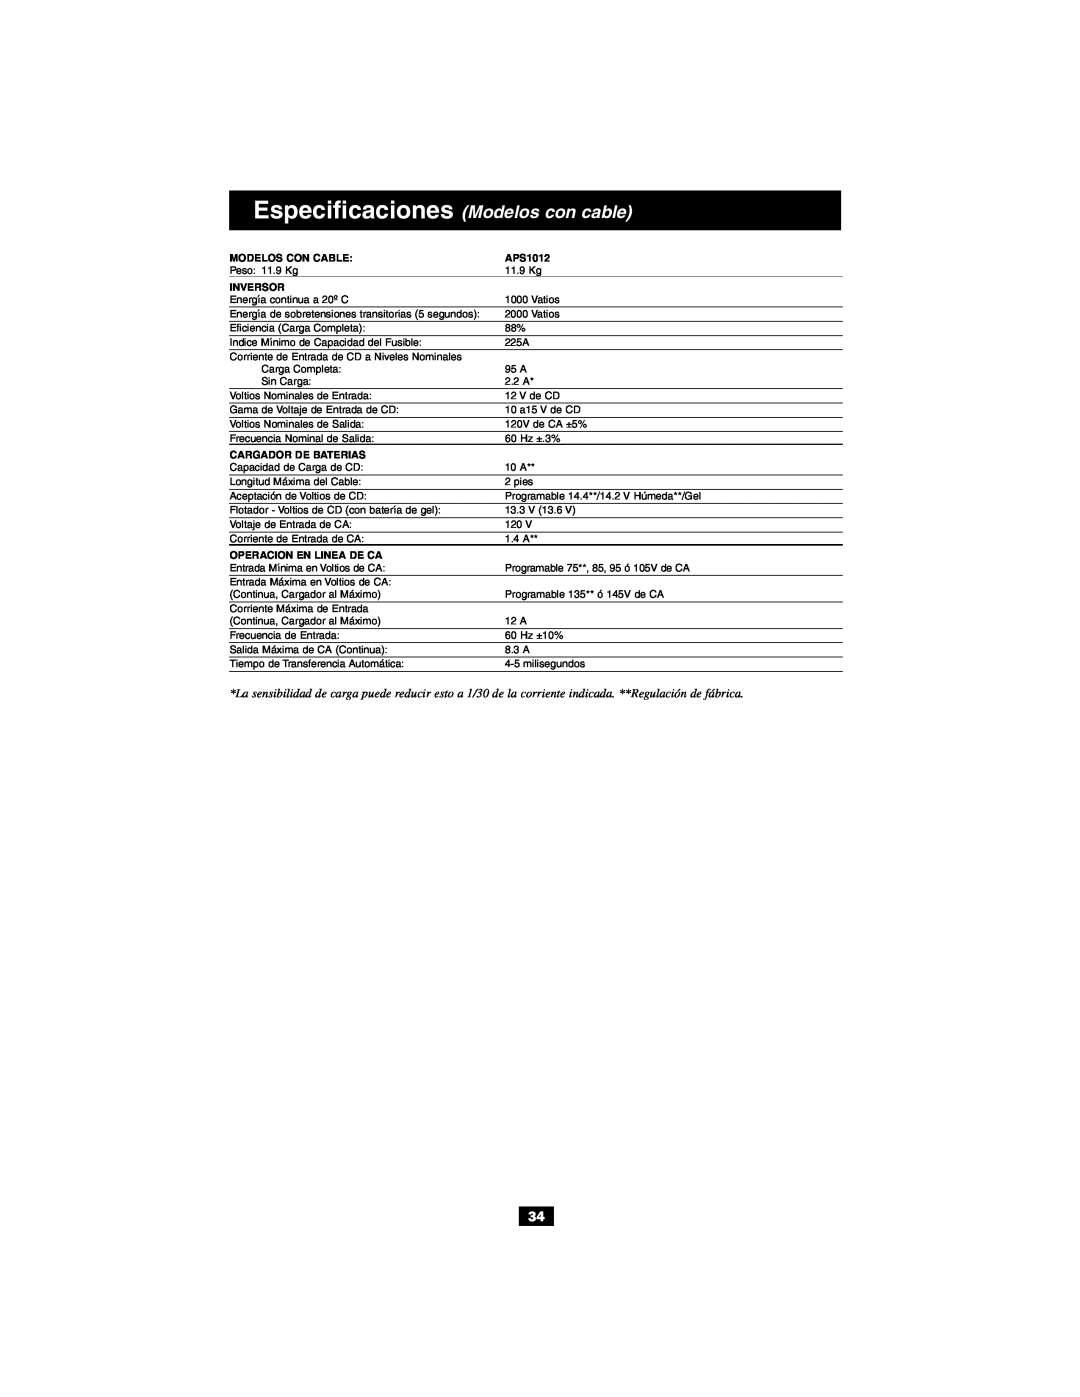 Tripp Lite Alternative Power Source owner manual Especificaciones Modelos con cable, Modelos Con Cable, APS1012, Inversor 